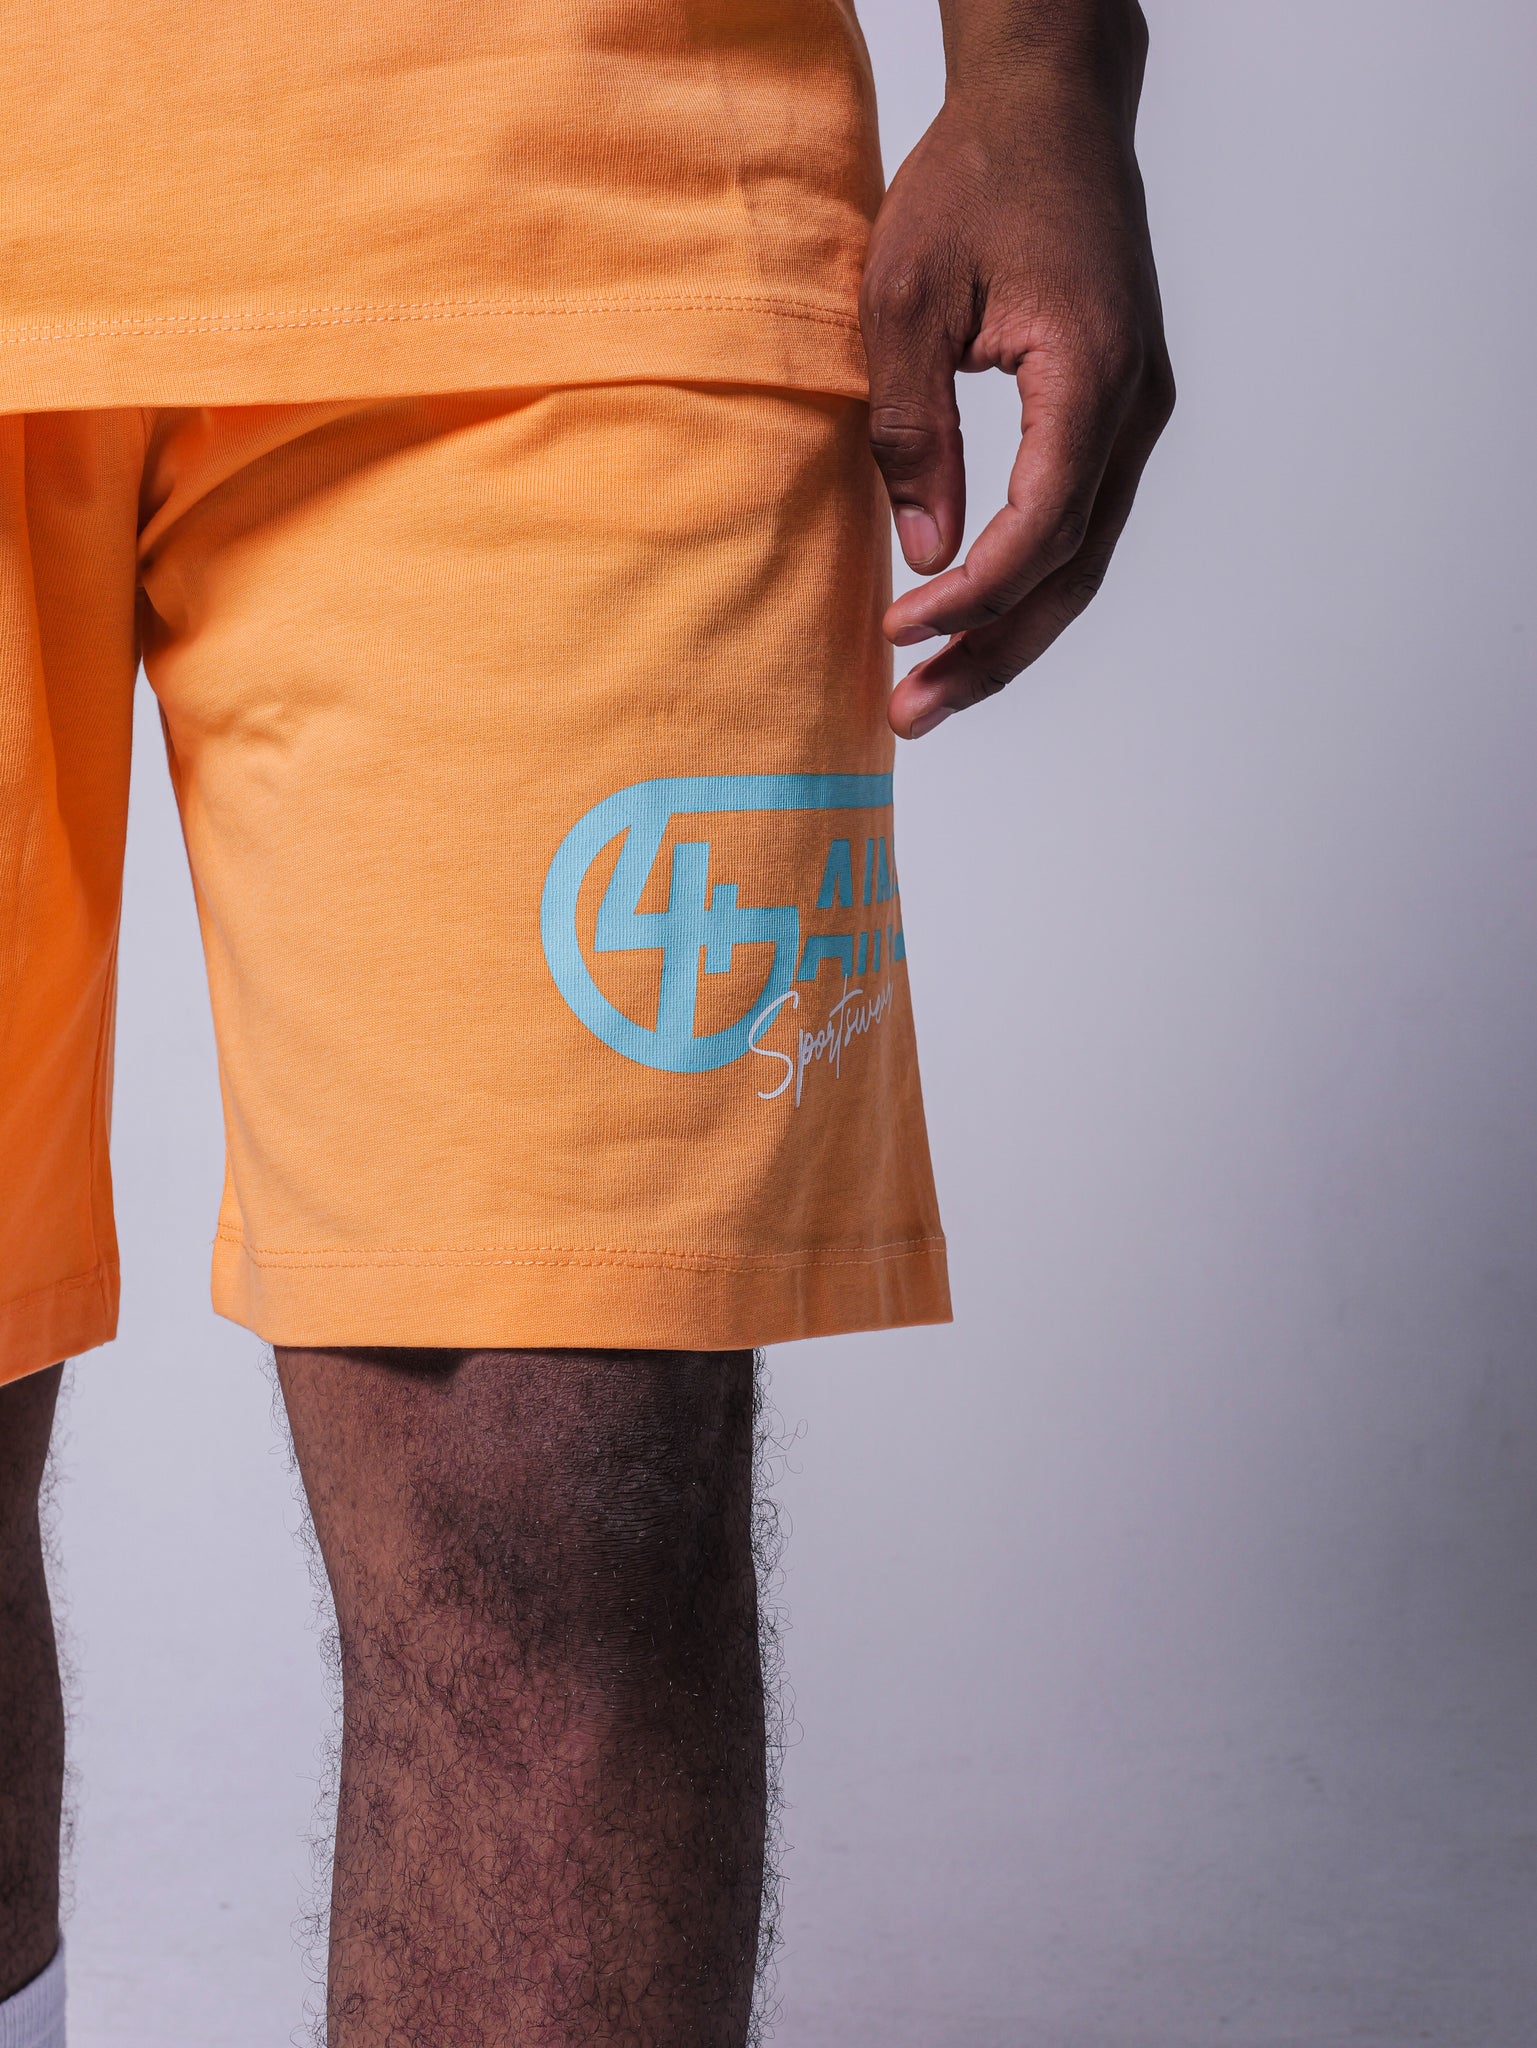 4GAINS Sportswear kurze Hose in der Farbe apricot mit türkisenem Aufdruck